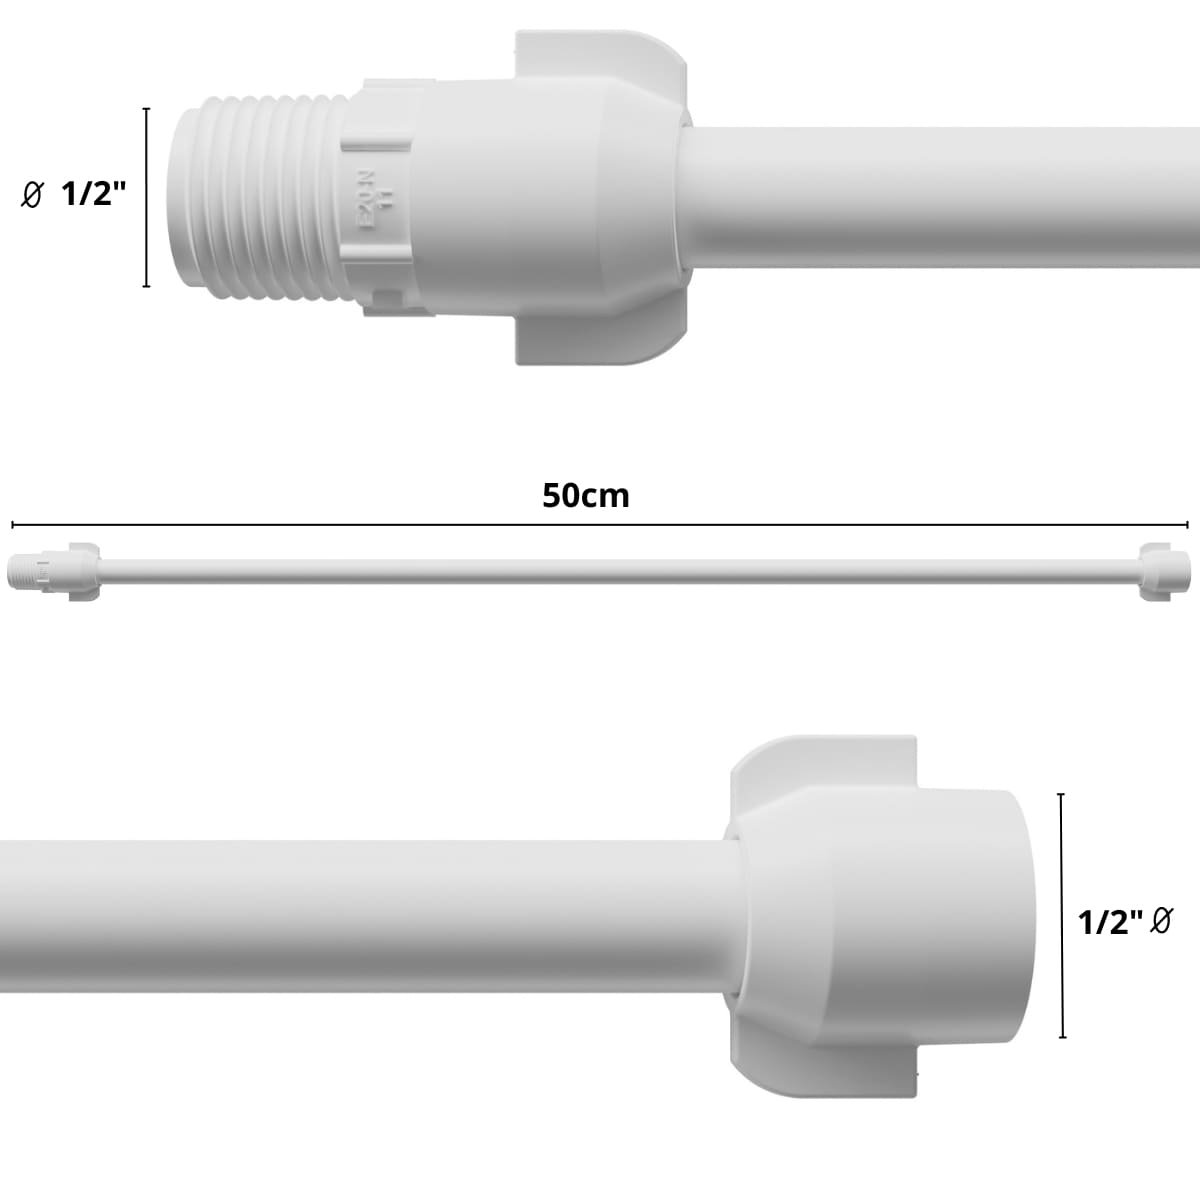 Engate Mangueira Flexível para Descarga 50cm X 1/2" Branco | Astra | Kit 10 Un - 2